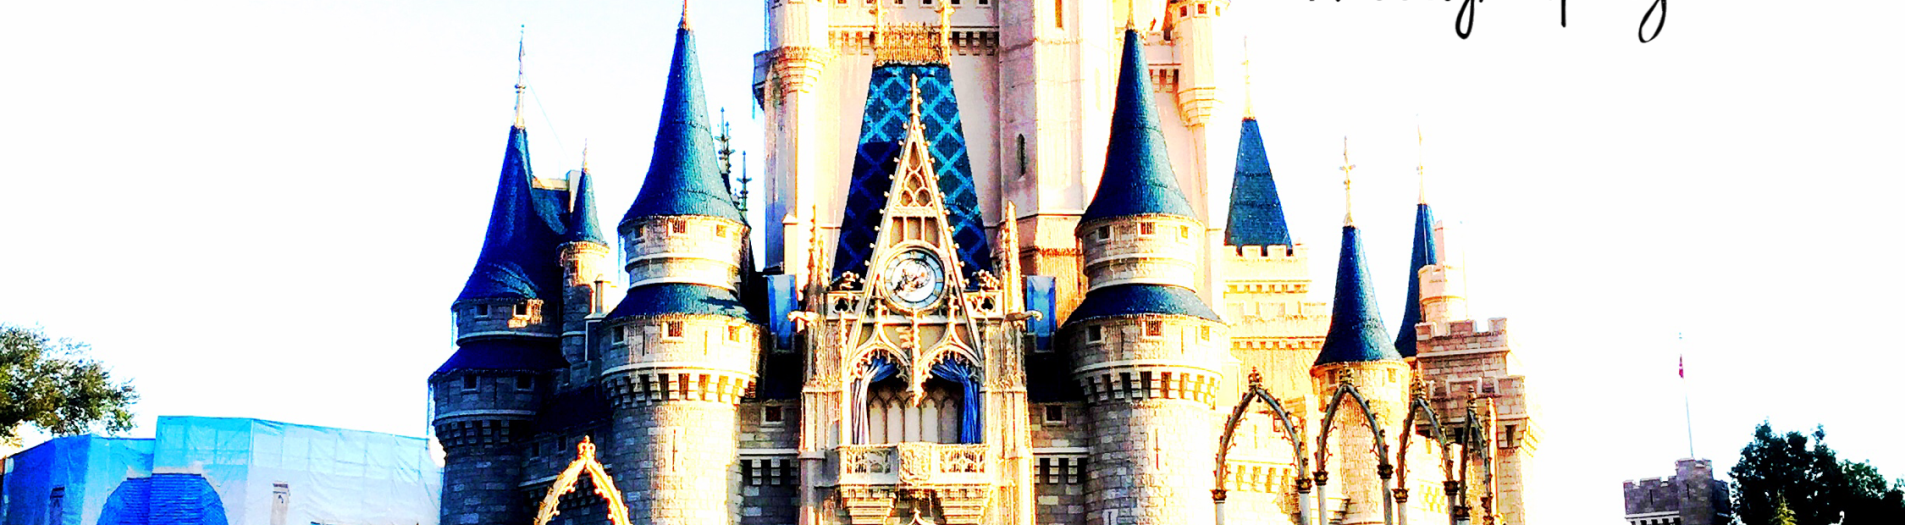 Cinderella's Castle! 